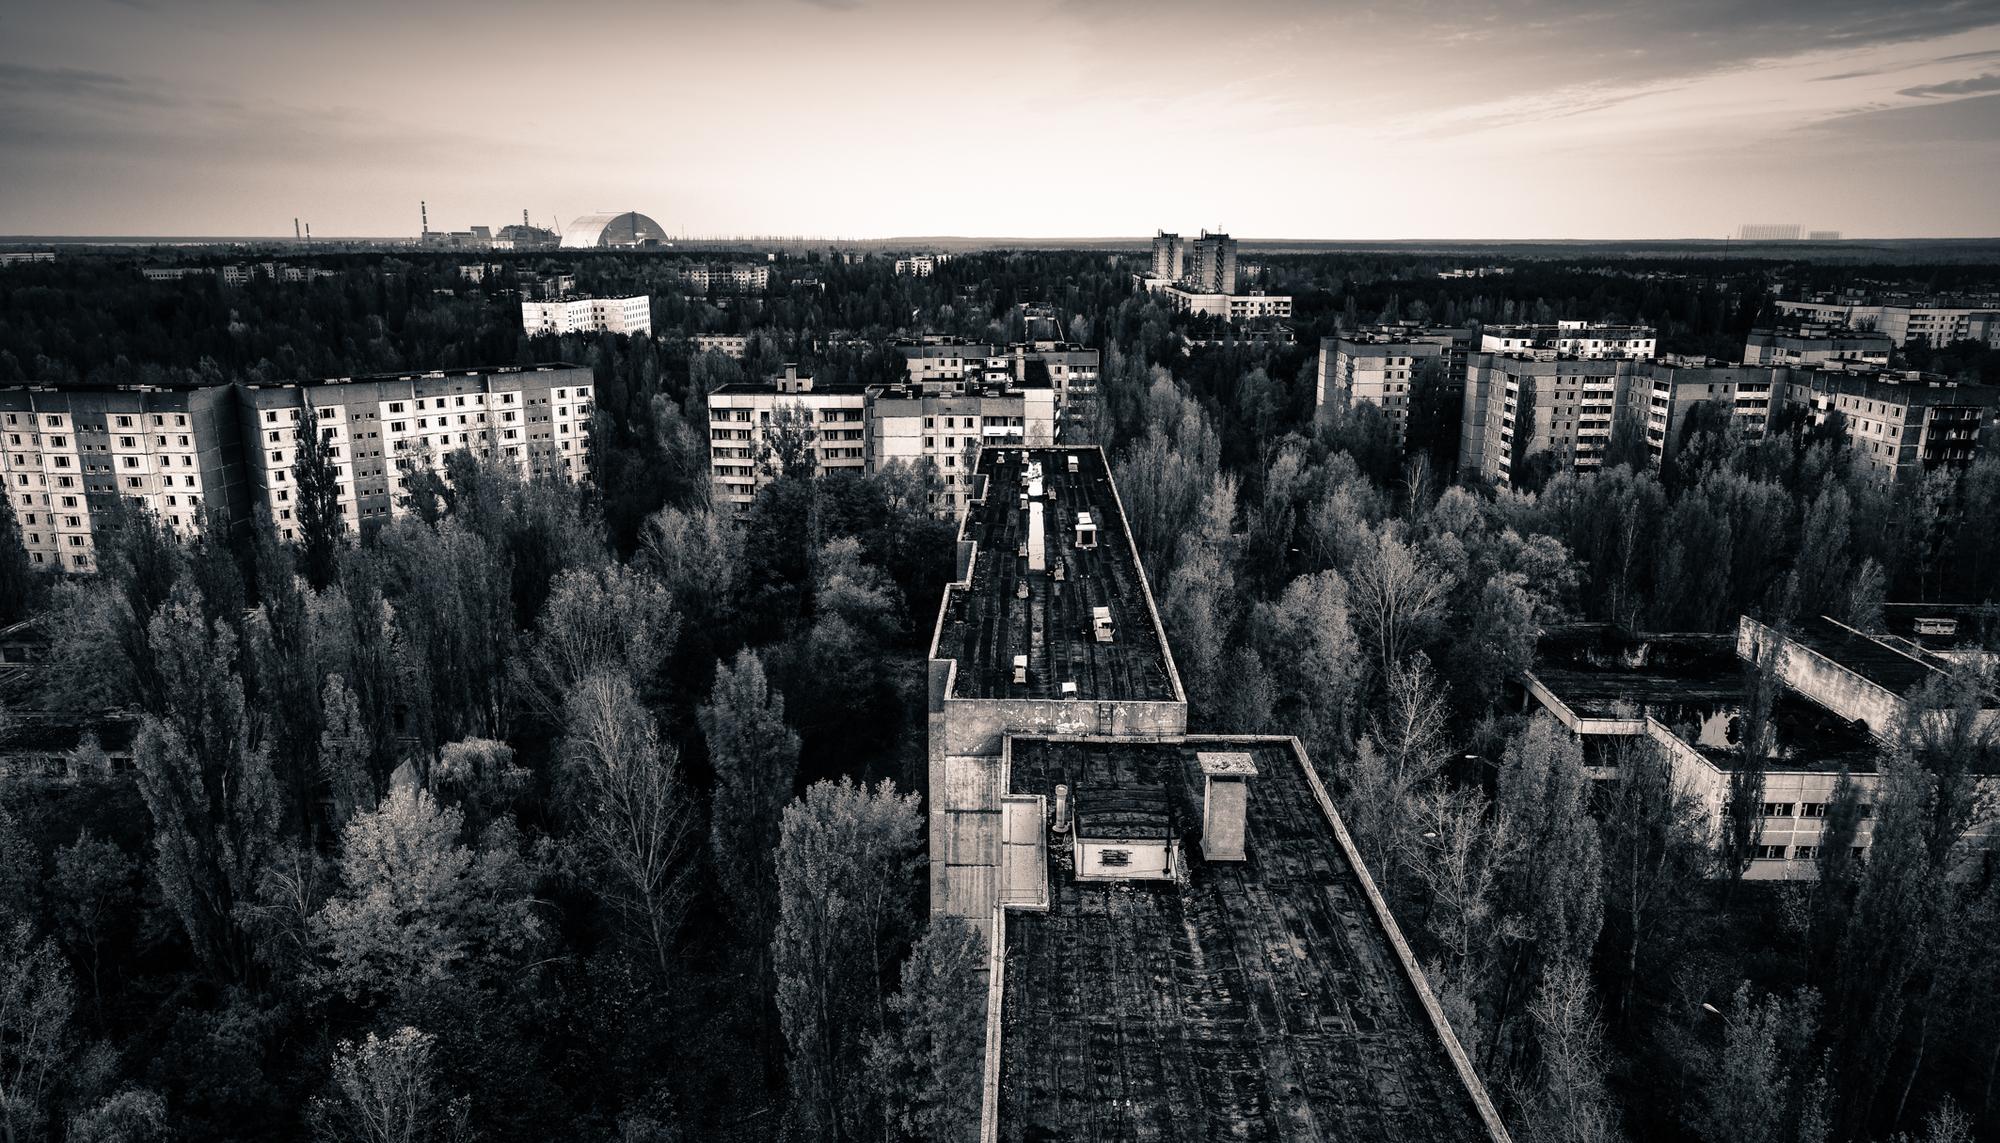 Prípiat, en la Zona de Exclusión de Chernóbil III. Imagen del documental 'Stalking Chernobyl'.